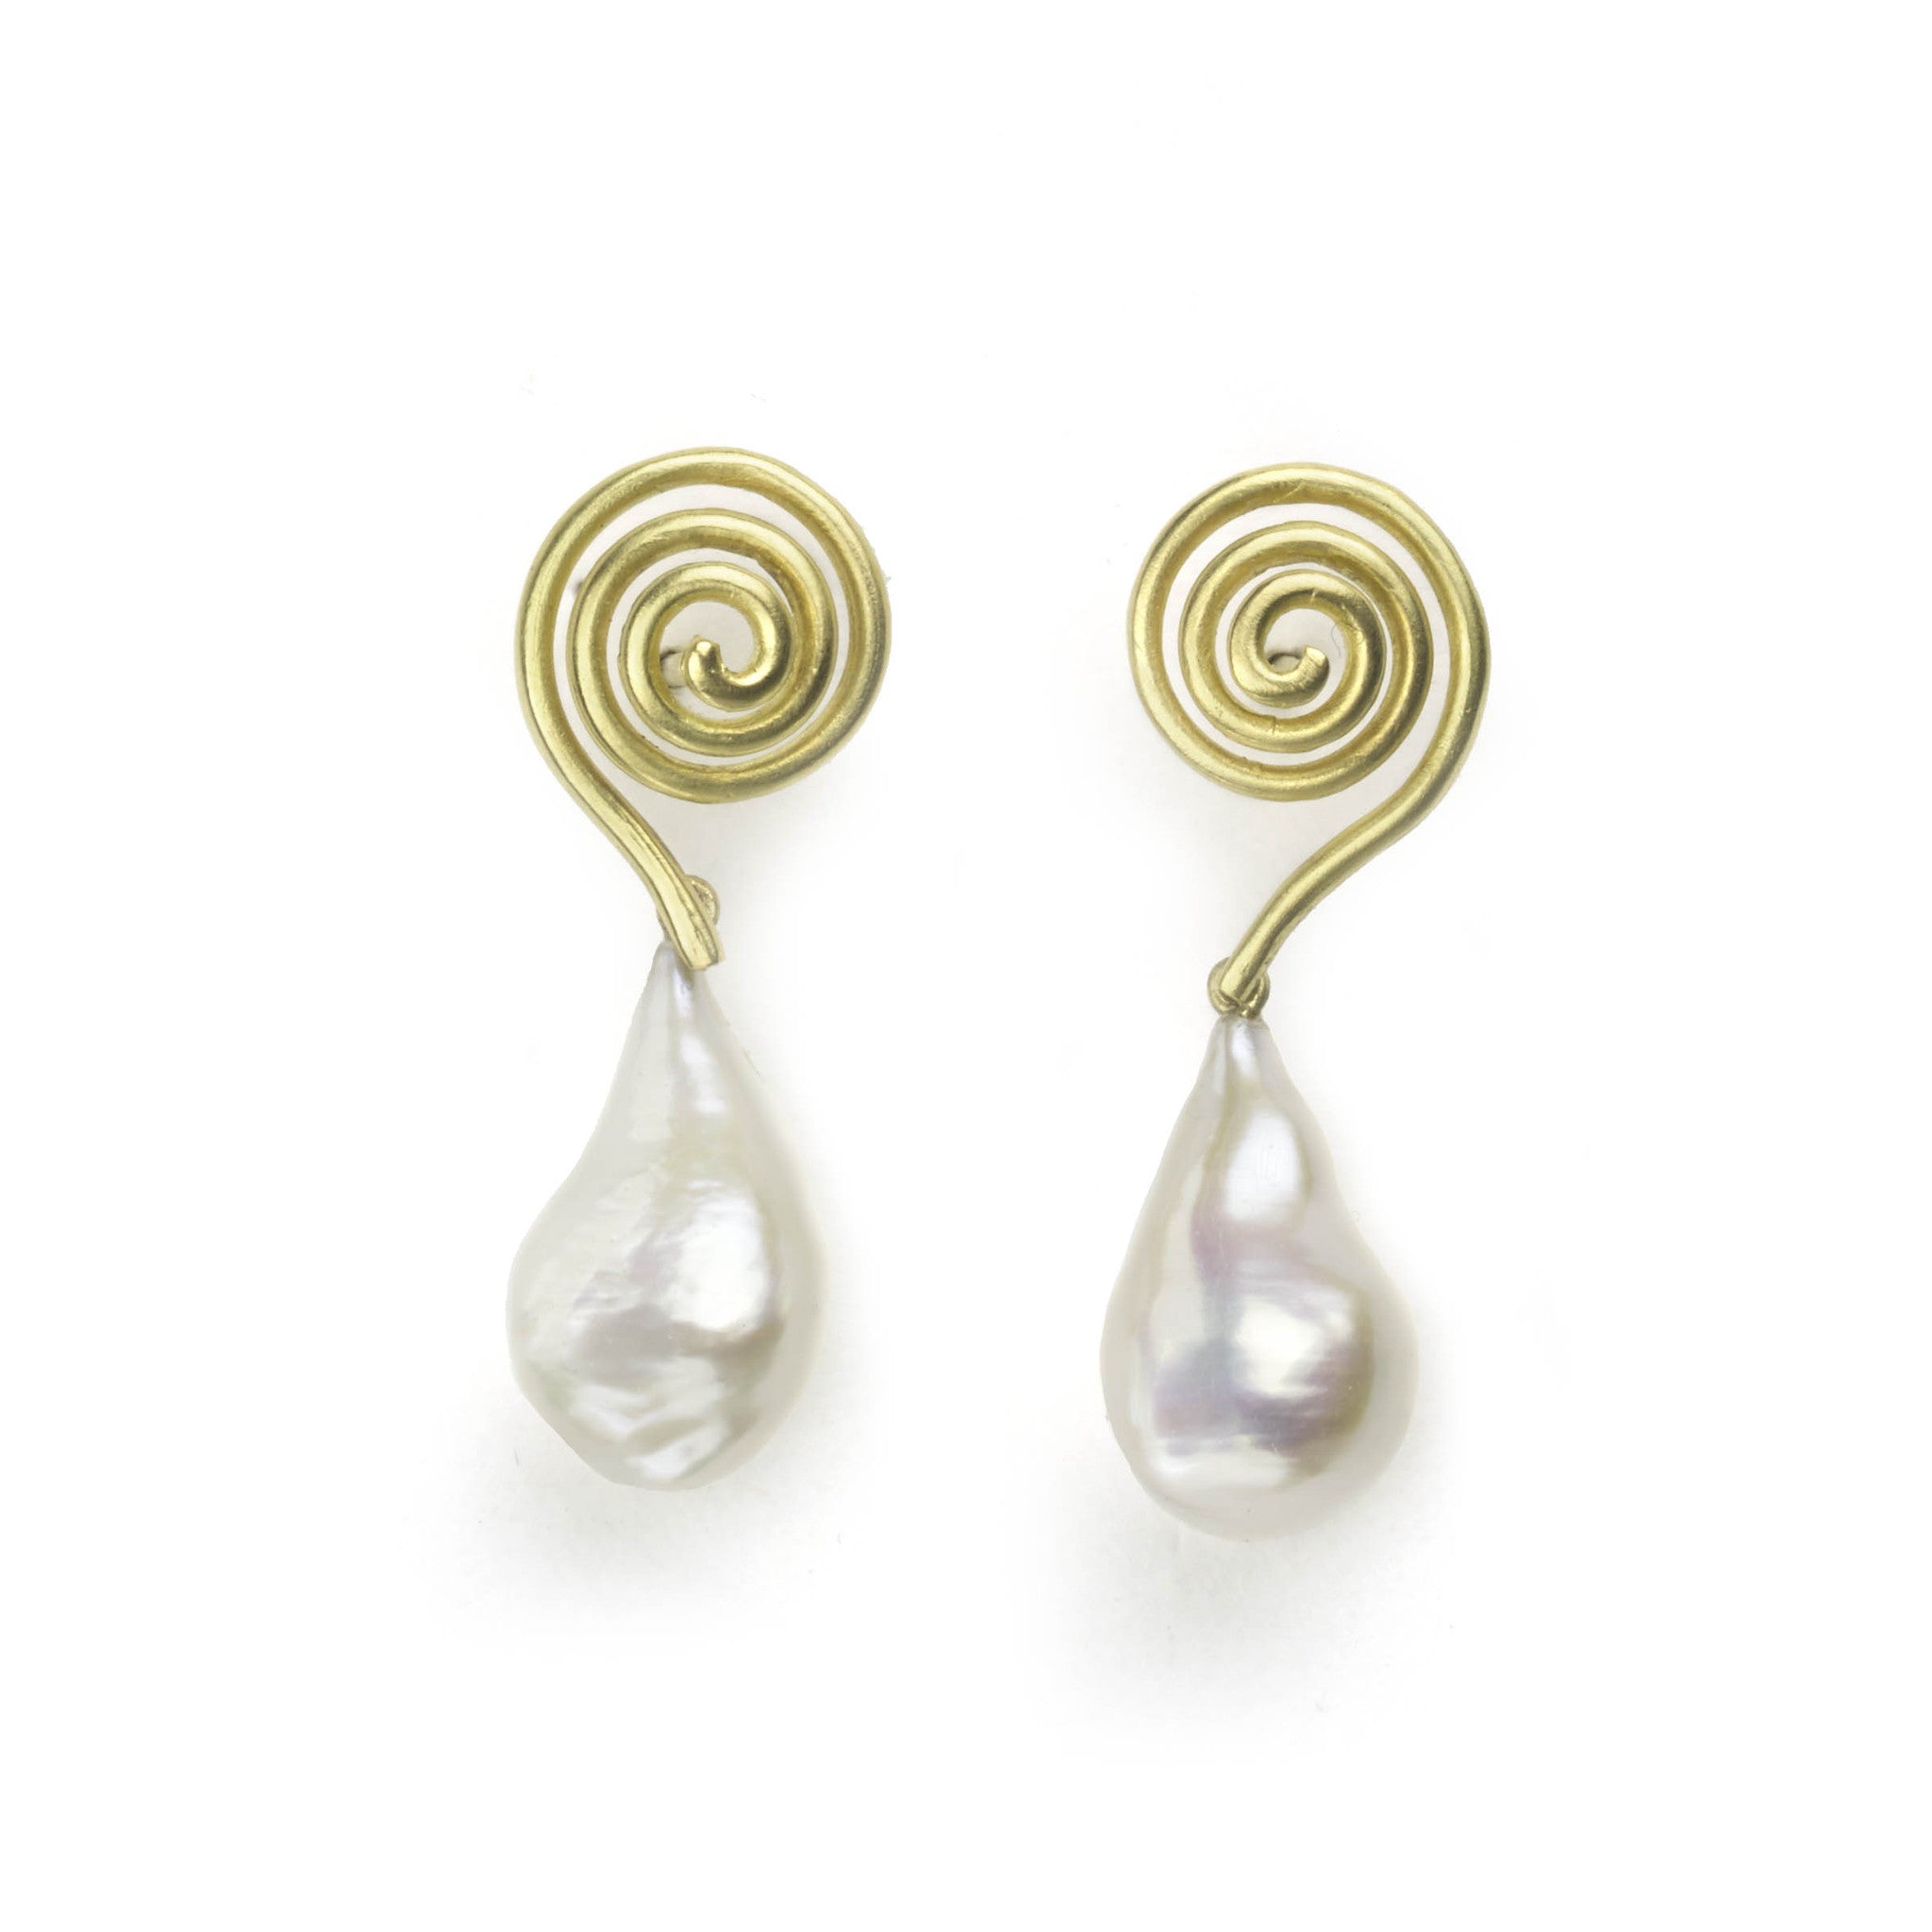 Baroque Pearl & Gold Swirl Drop Earrings by Julia Lloyd George